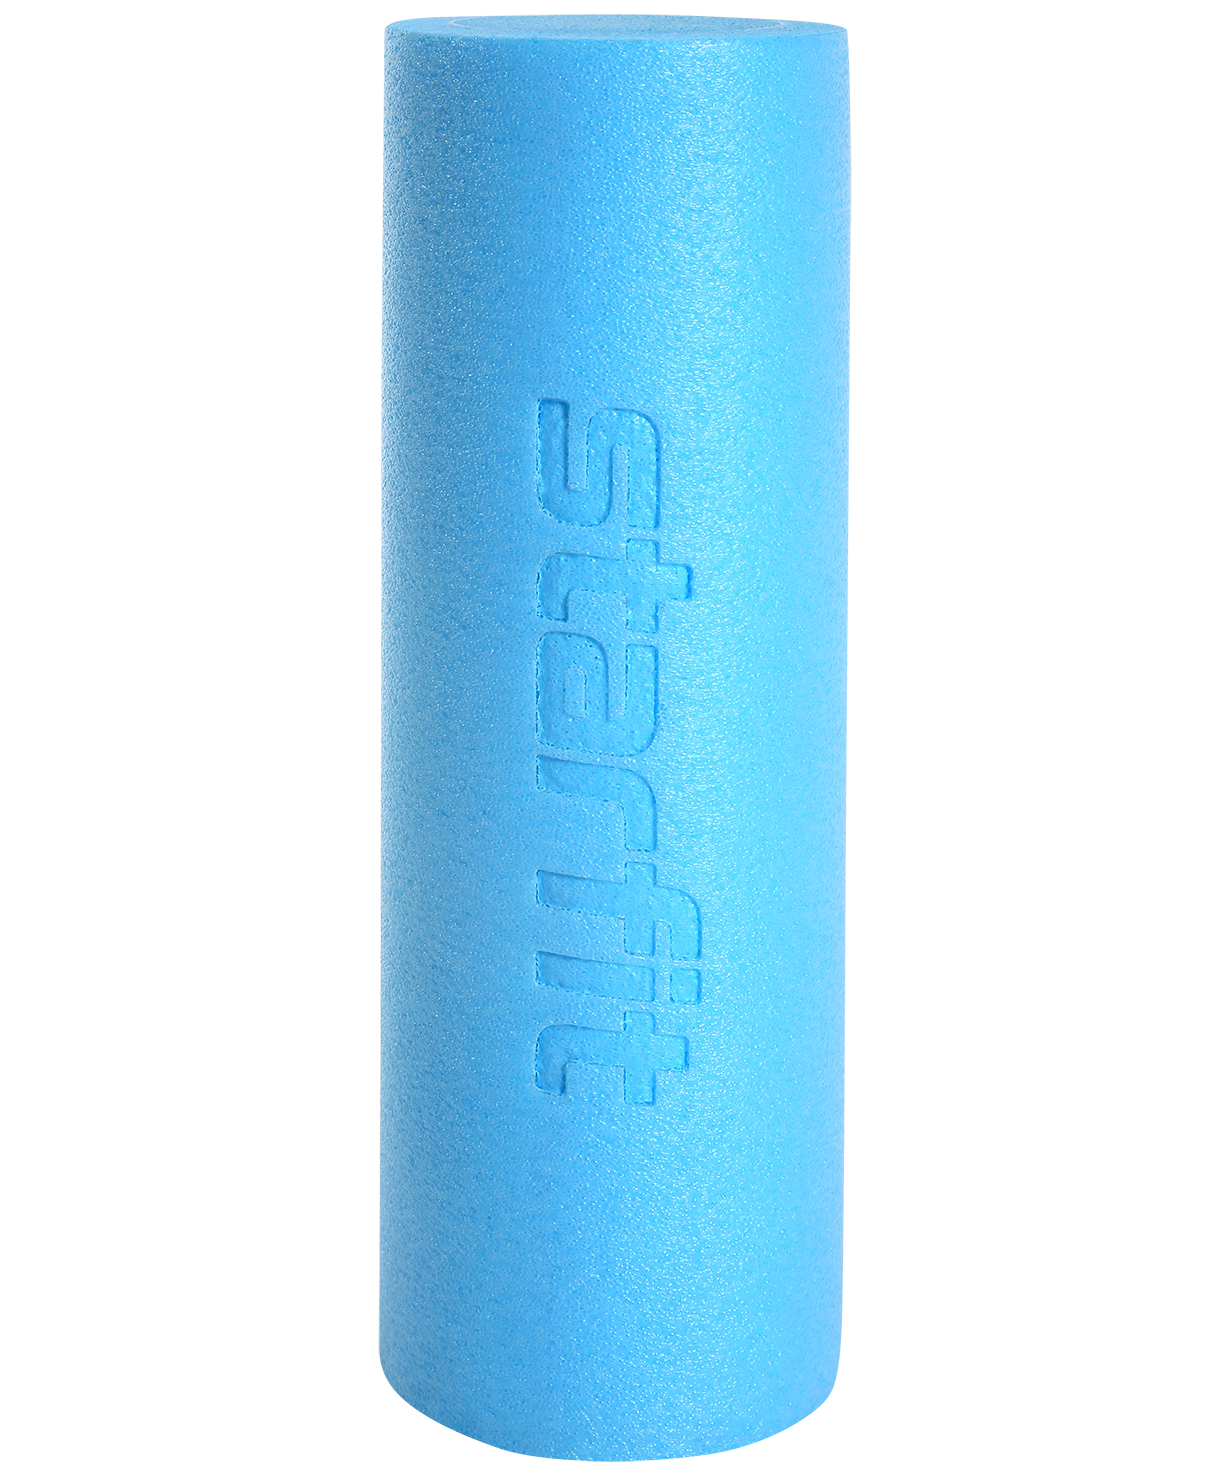 Ролик для йоги и пилатеса Core FA-501, 15x45 см, синий пастель